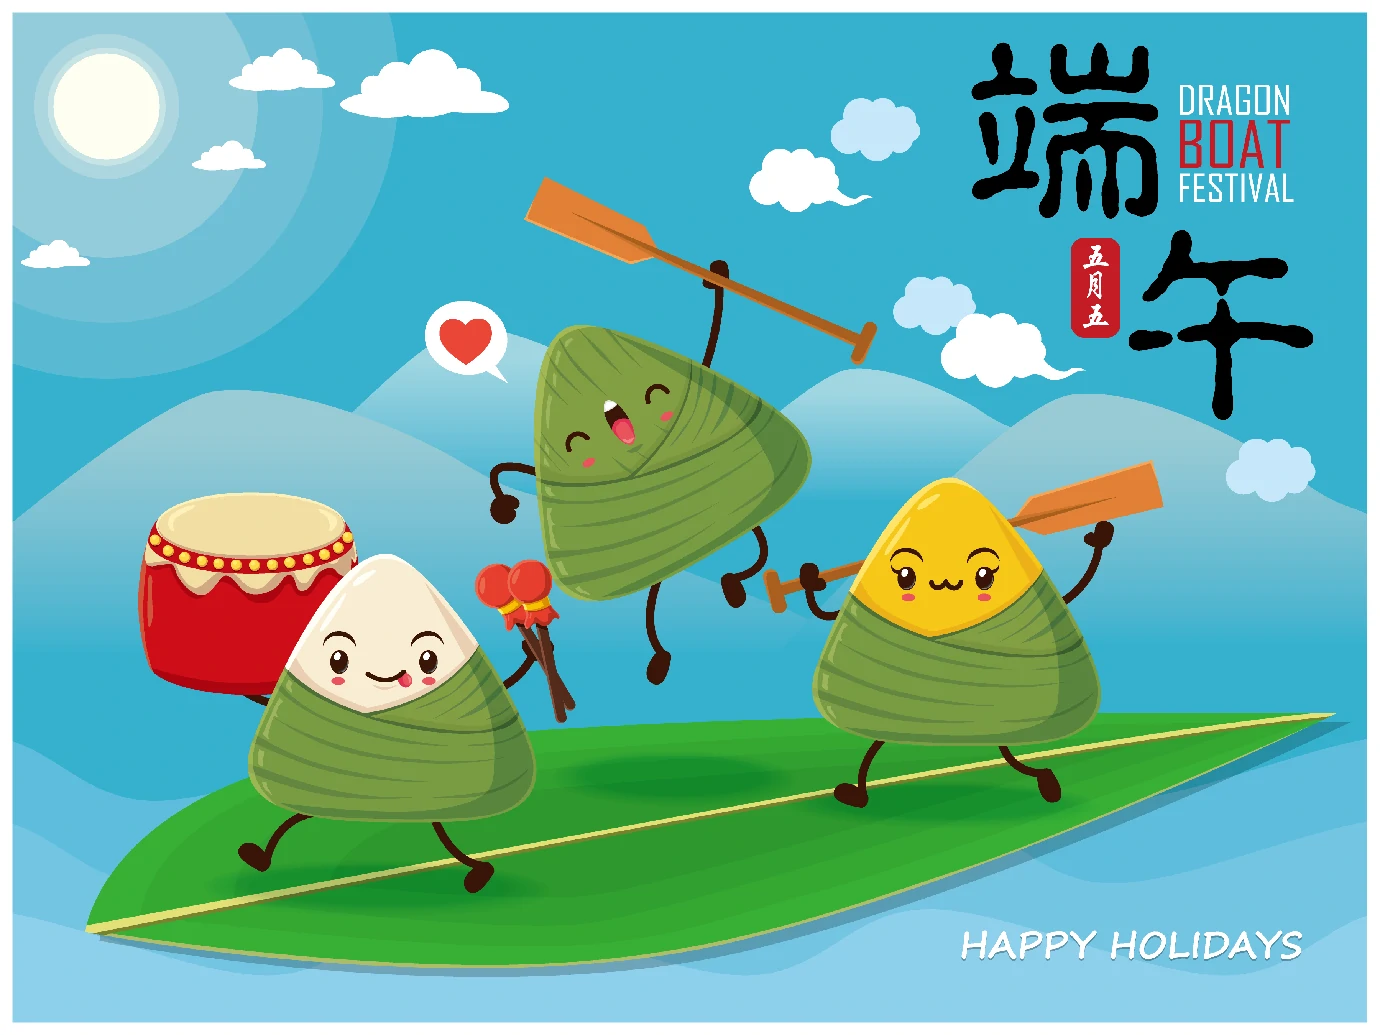 中国传统节日卡通手绘端午节赛龙舟粽子插画海报AI矢量设计素材【003】